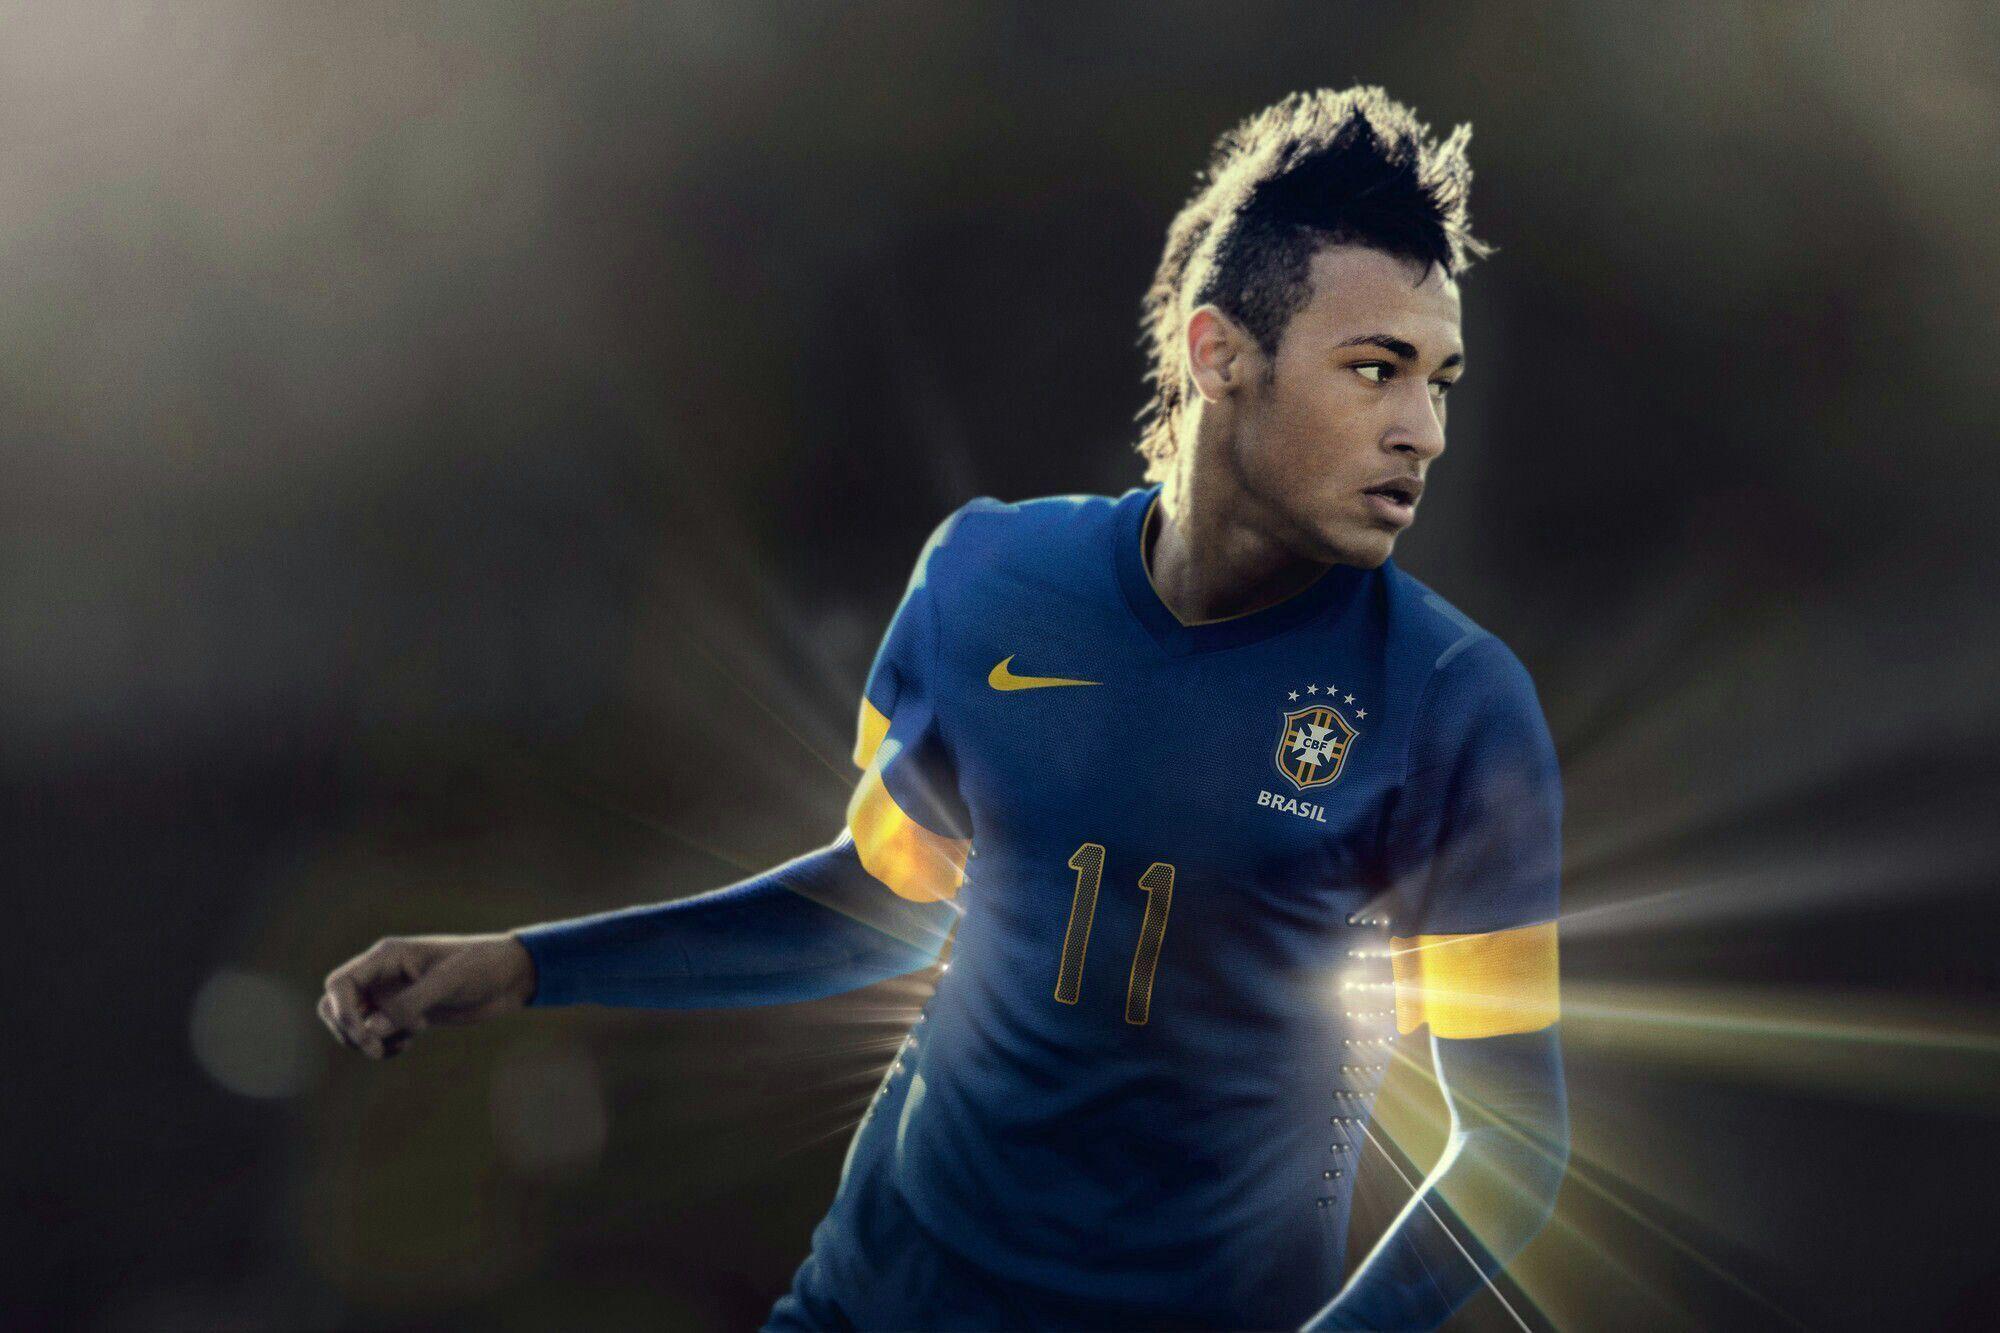 Neymar HD Wallpaper 2015 Sporteology